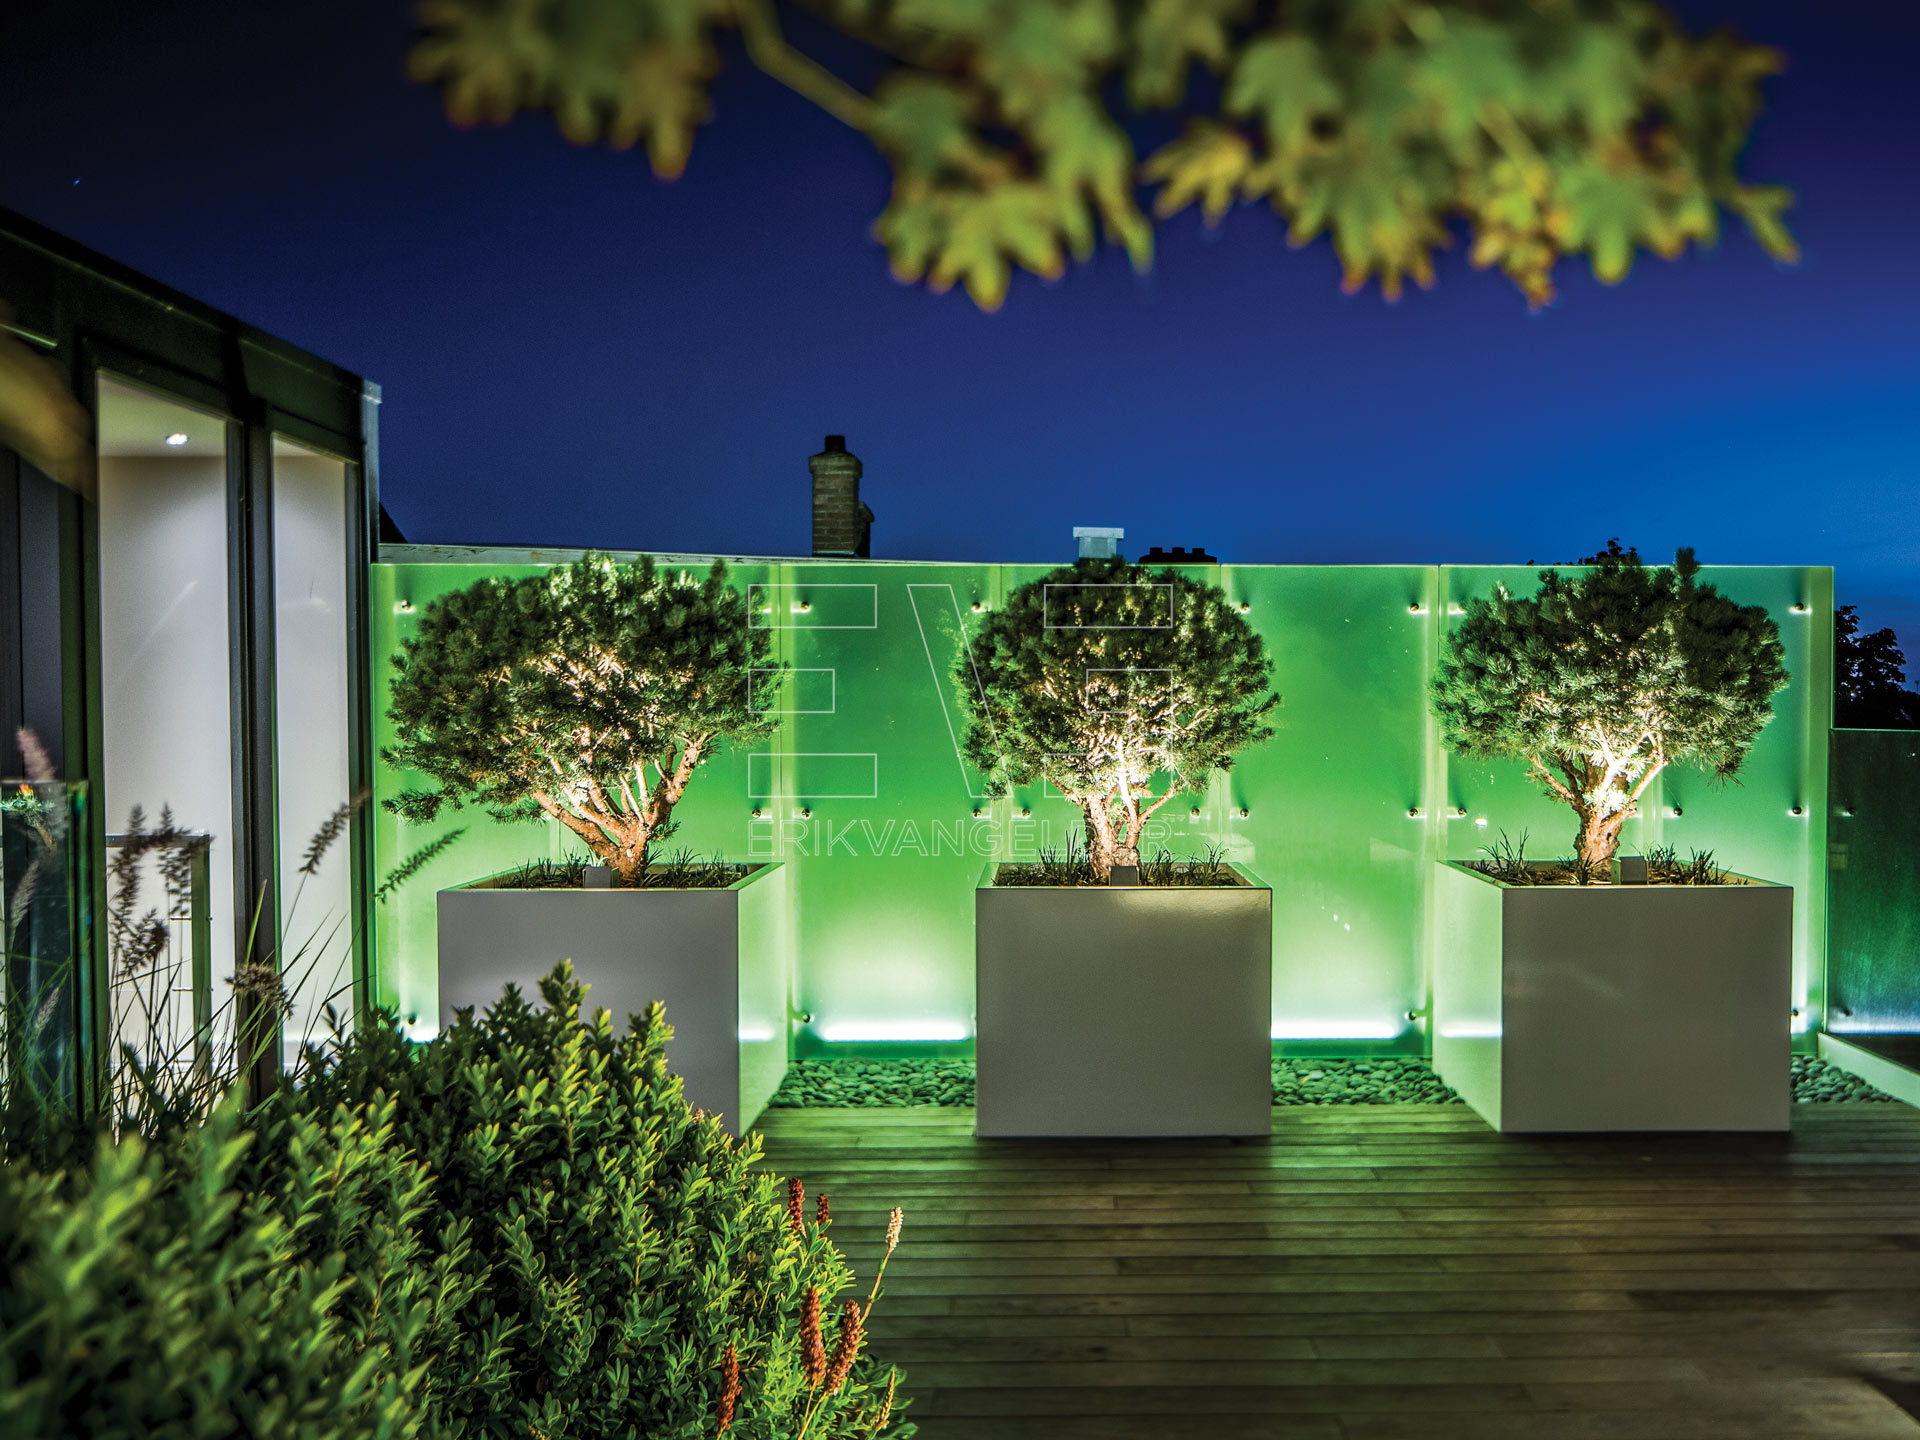 Luxe plantenbakken strak design wit vierkant modern pinus sylvestris watereri modern sfeervol erikvangelder tuindesign luxury gardens